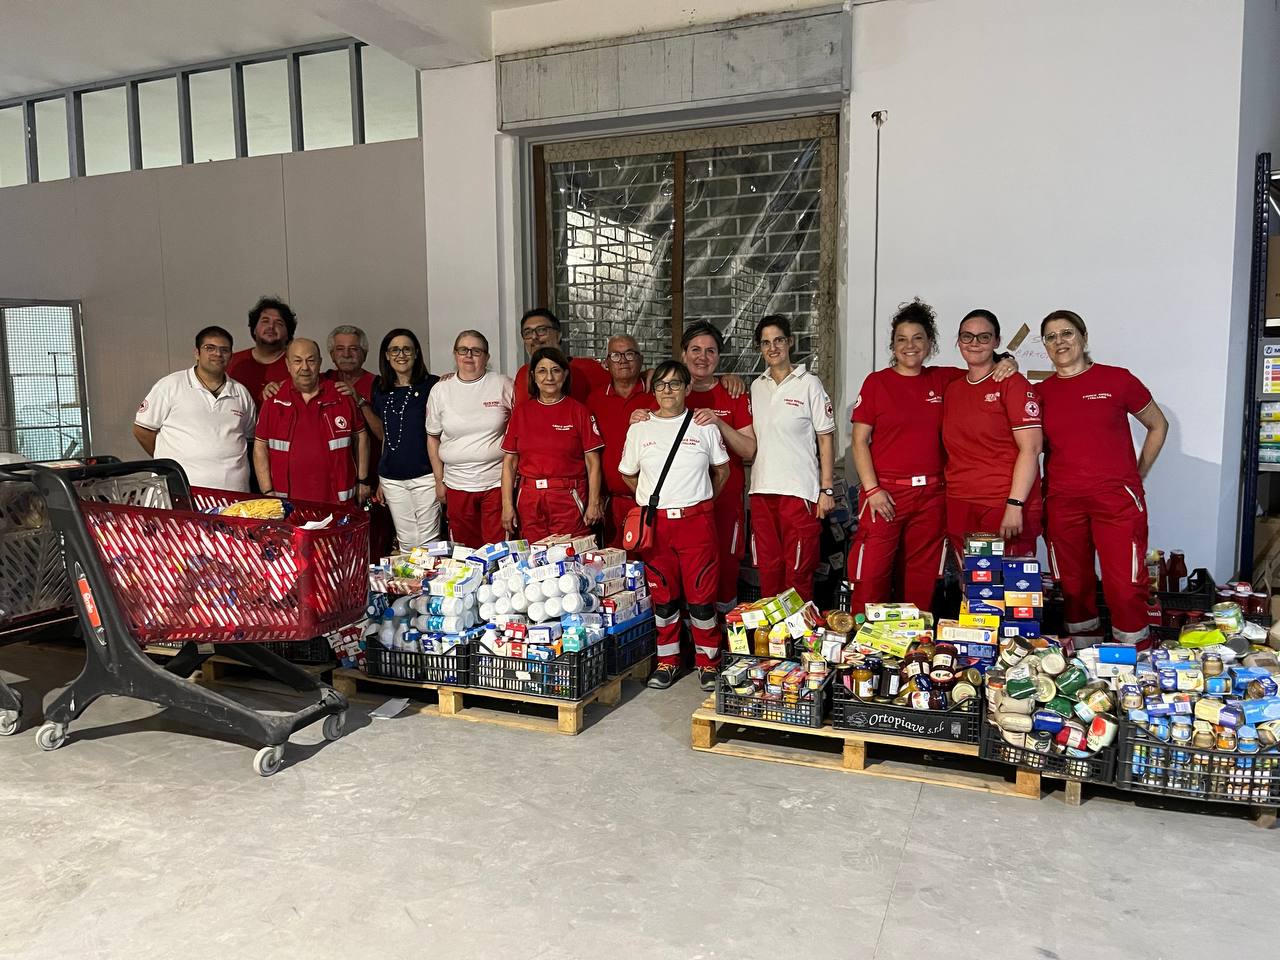 Caltanissetta. Croce Rossa Italiana, successo per l’iniziativa “Riempi il carrello di solidarietà”: raccolte 6 tonnellate di prodotti alimentari